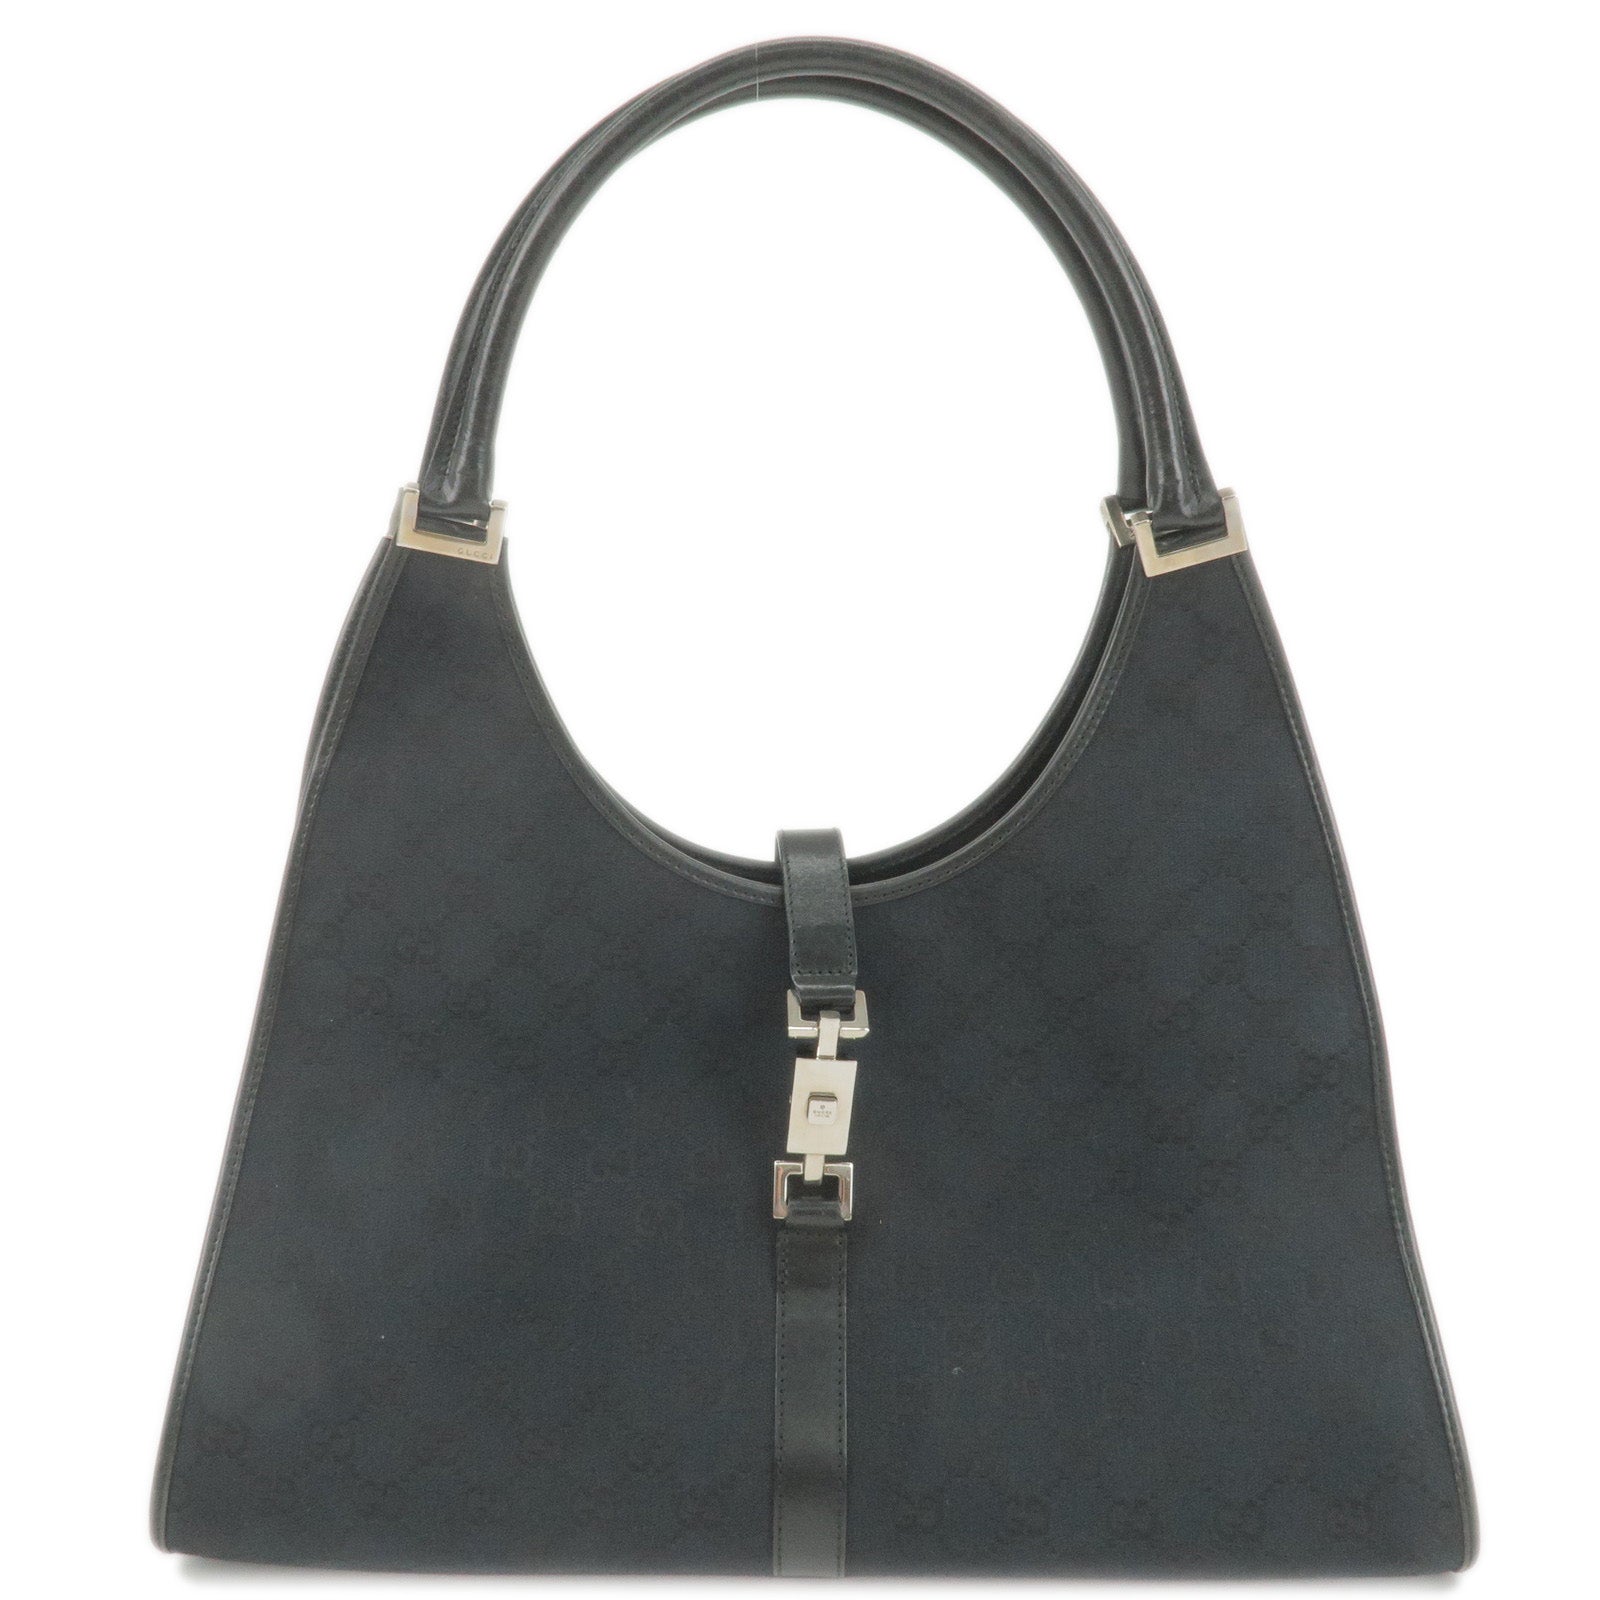 Gucci Black Monogram Shoulder Bag